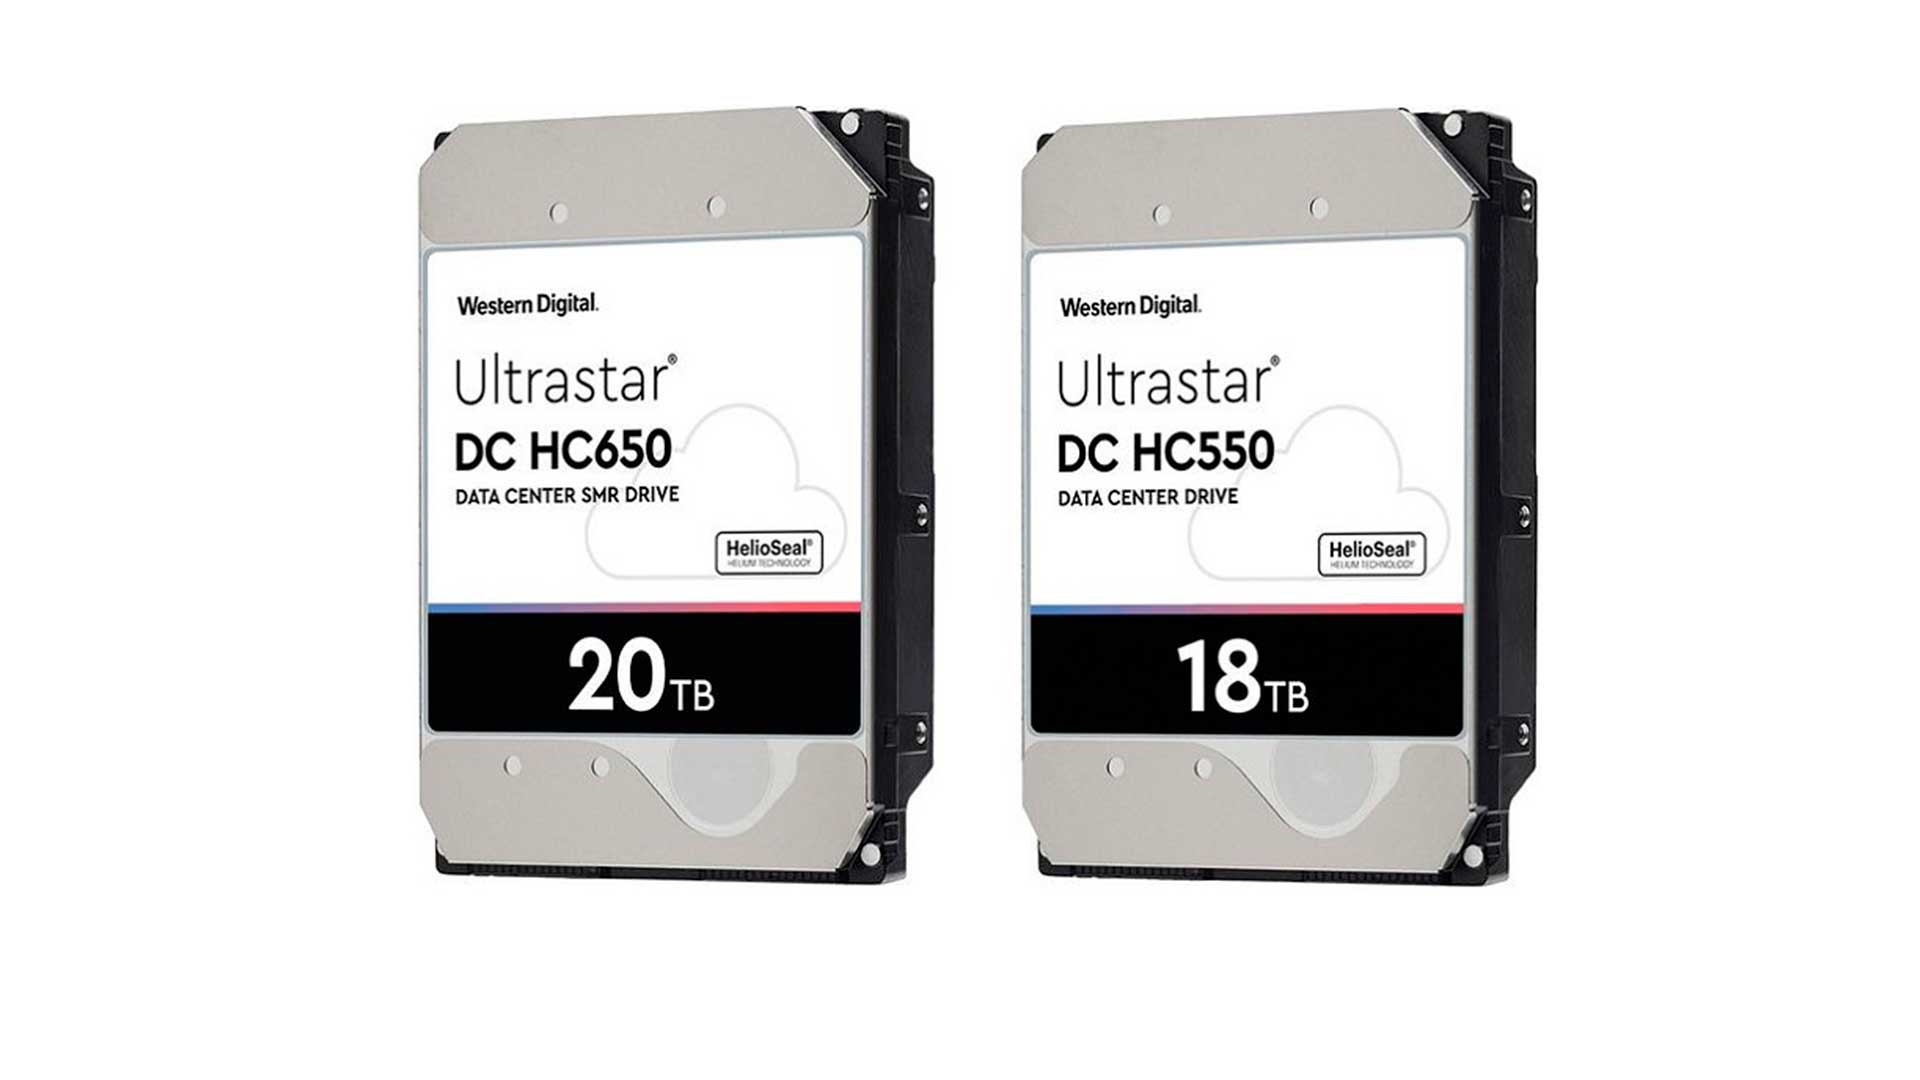 Western Digital Memperkenalkan Hard Drive Baru untuk Ultrastar Line: 18 TB dan 20 TB